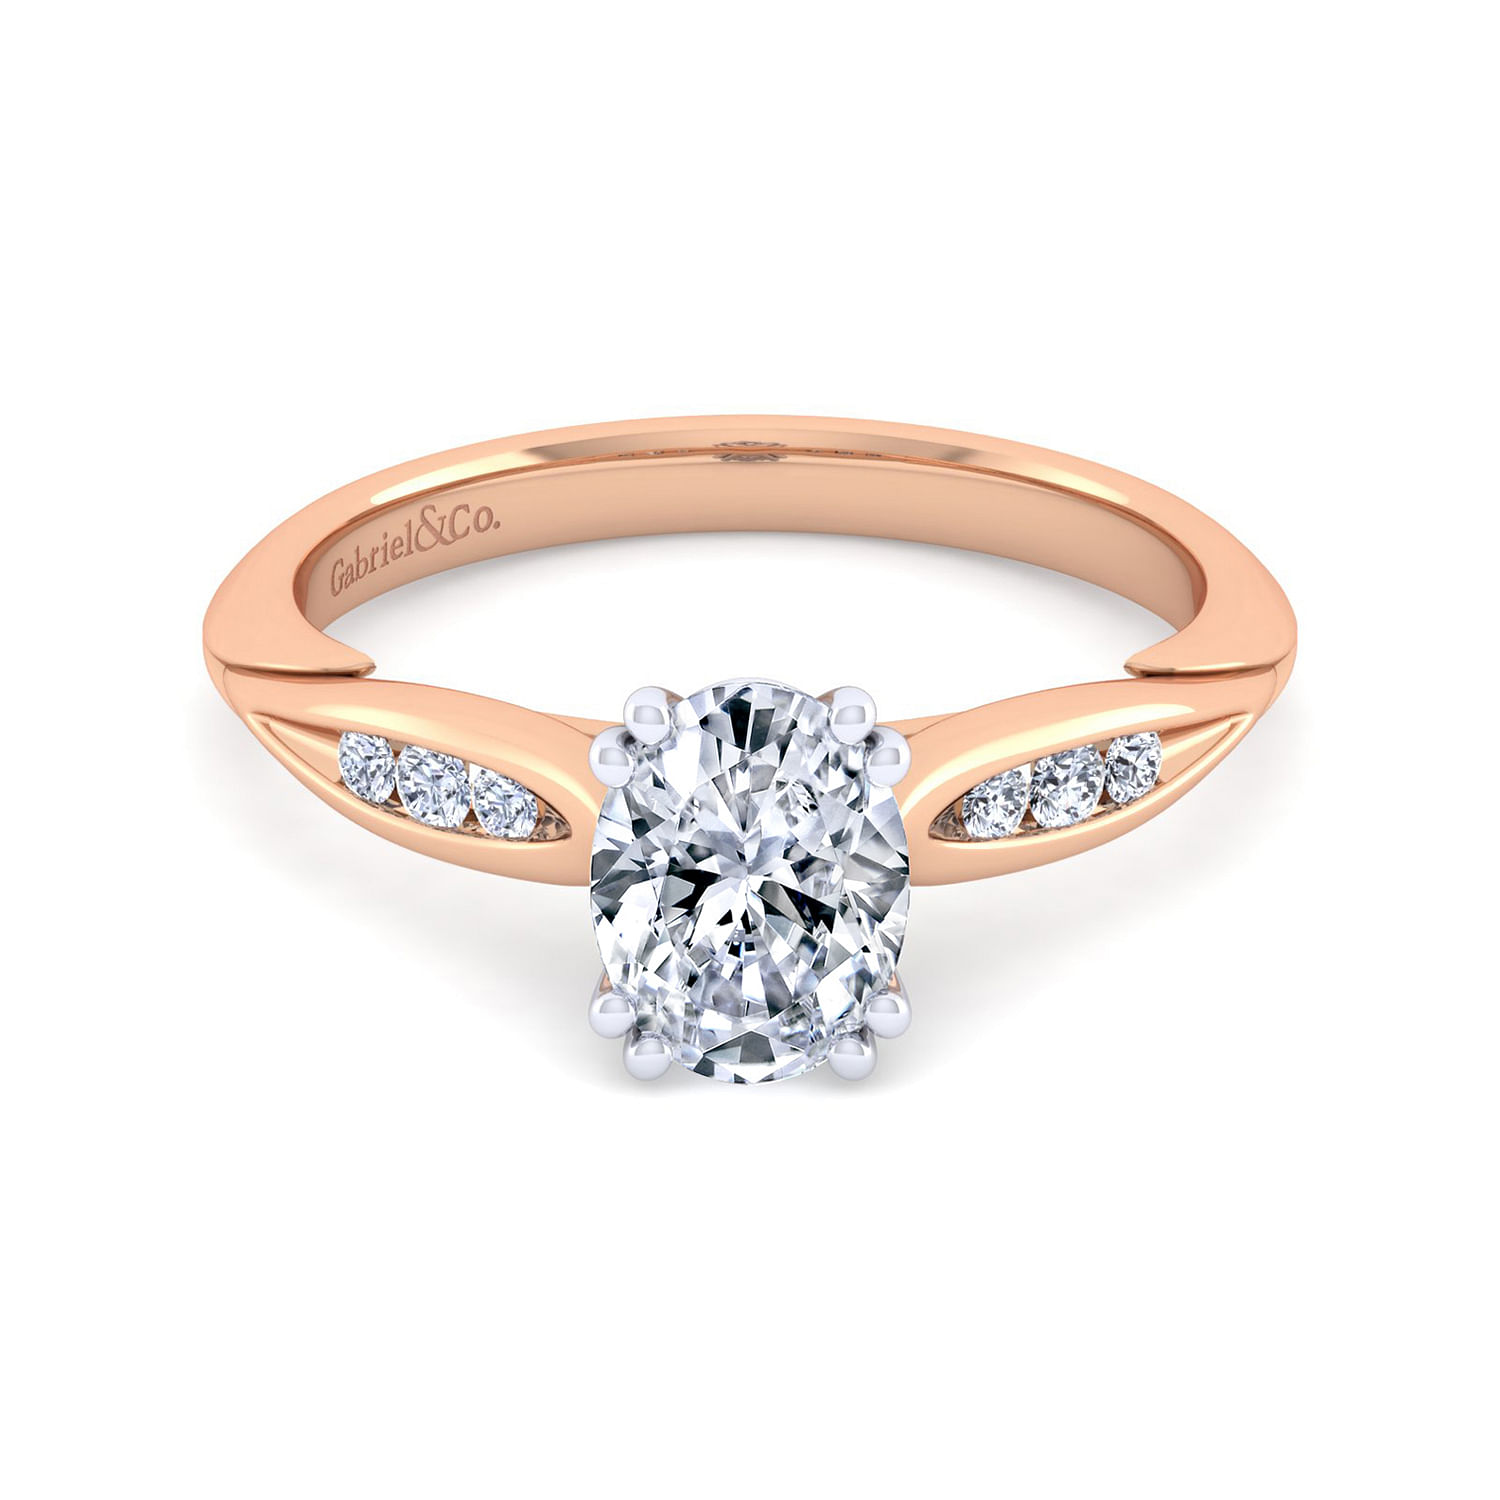 Quinn - 14K White-Rose Gold Oval Diamond Channel Set Engagement Ring